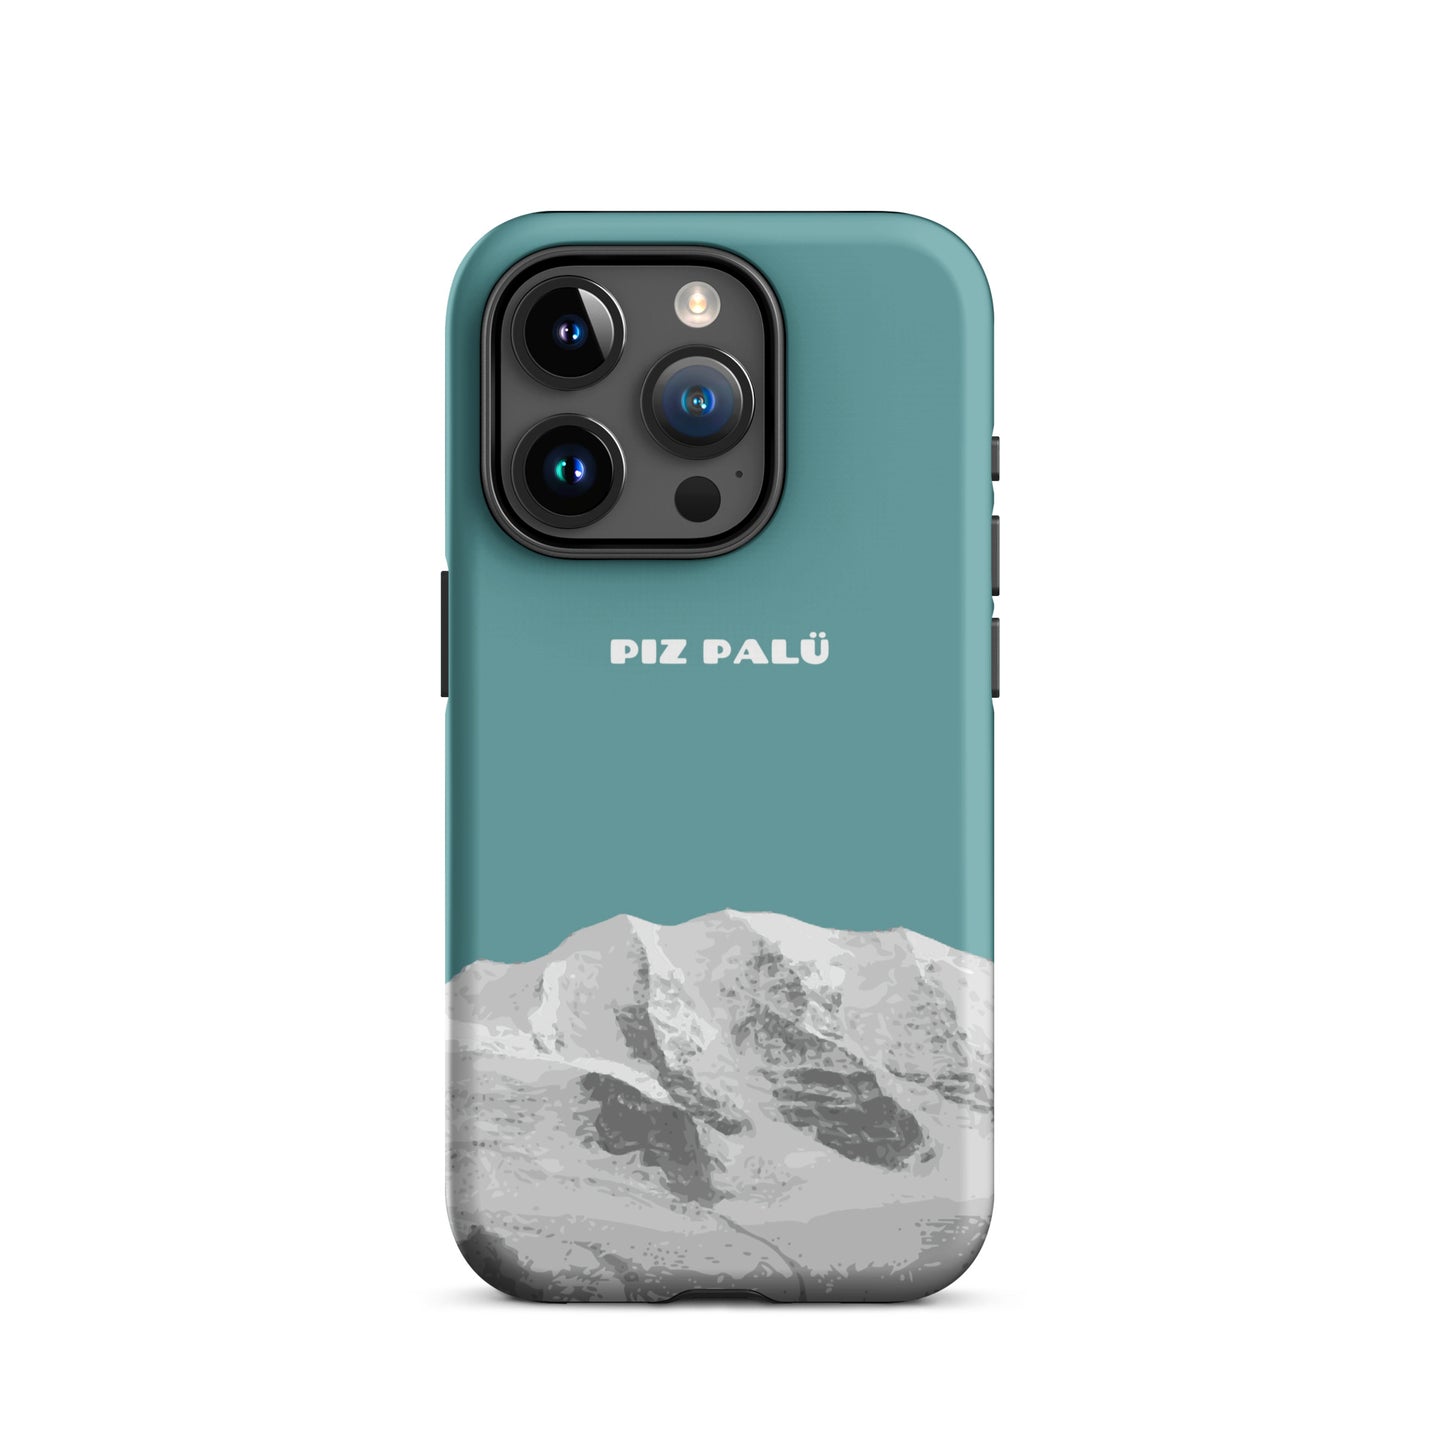 Hülle für das iPhone 15 Pro von Apple in der Farbe Kadettenblau, dass den Piz Palü in Graubünden zeigt.